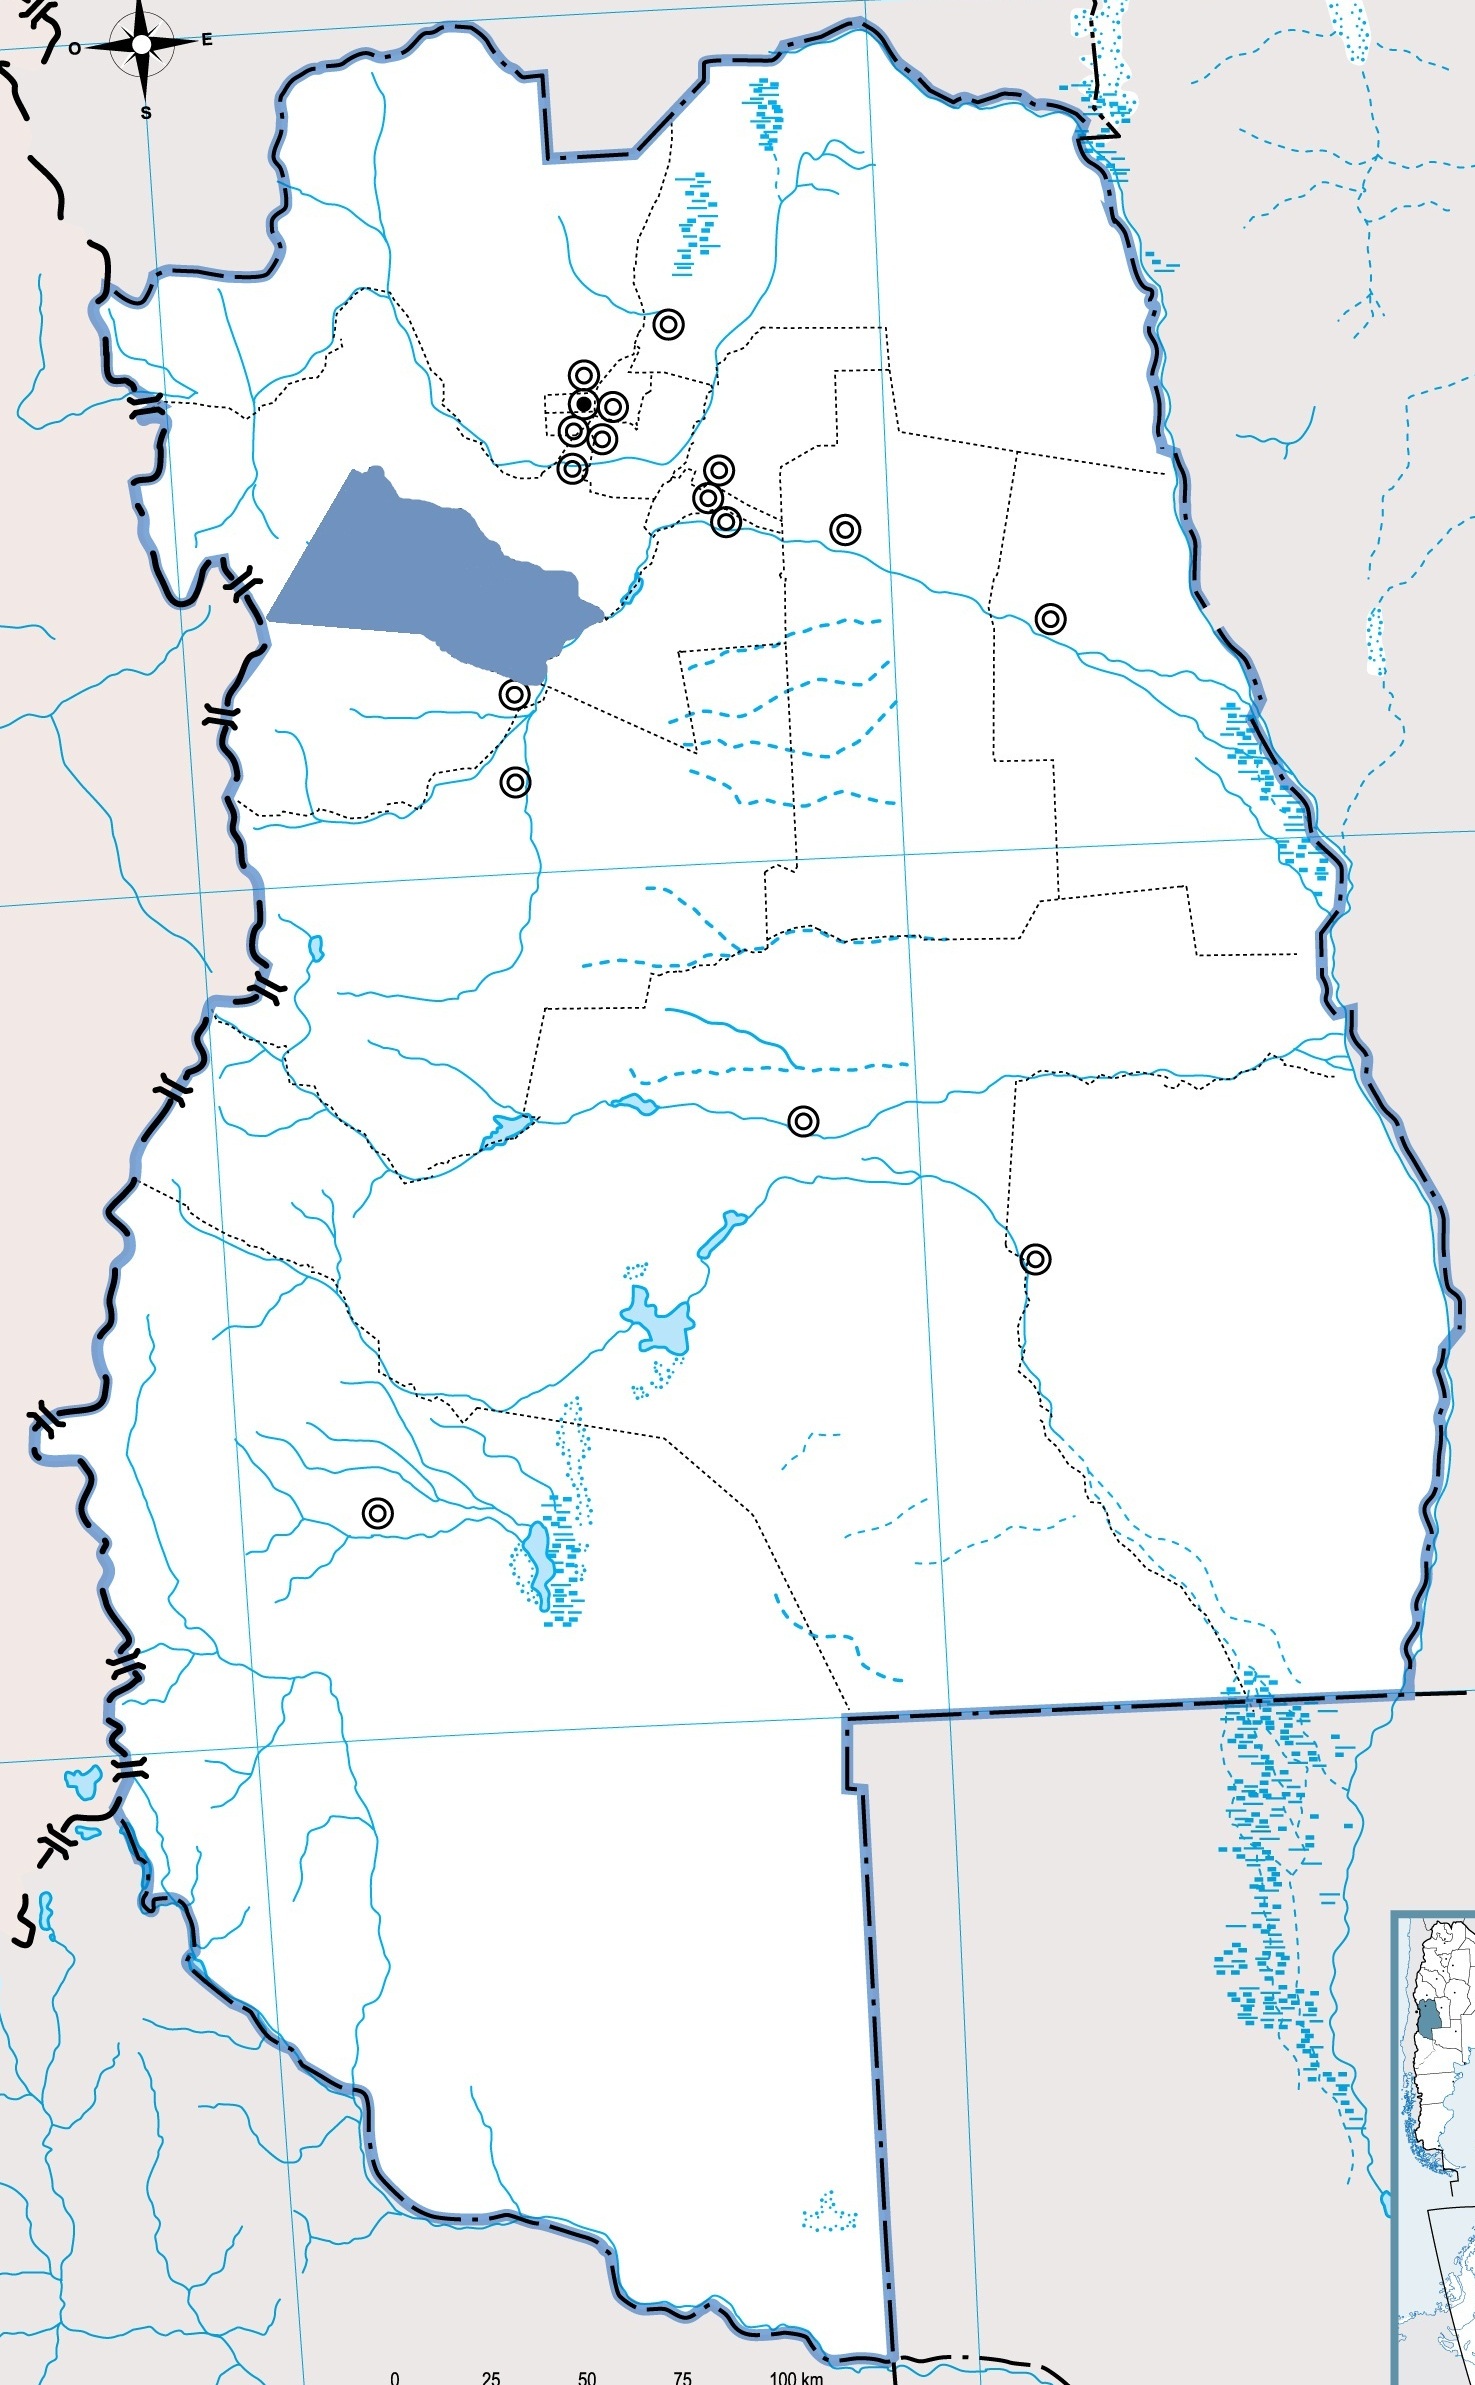 Mapa Tupungato